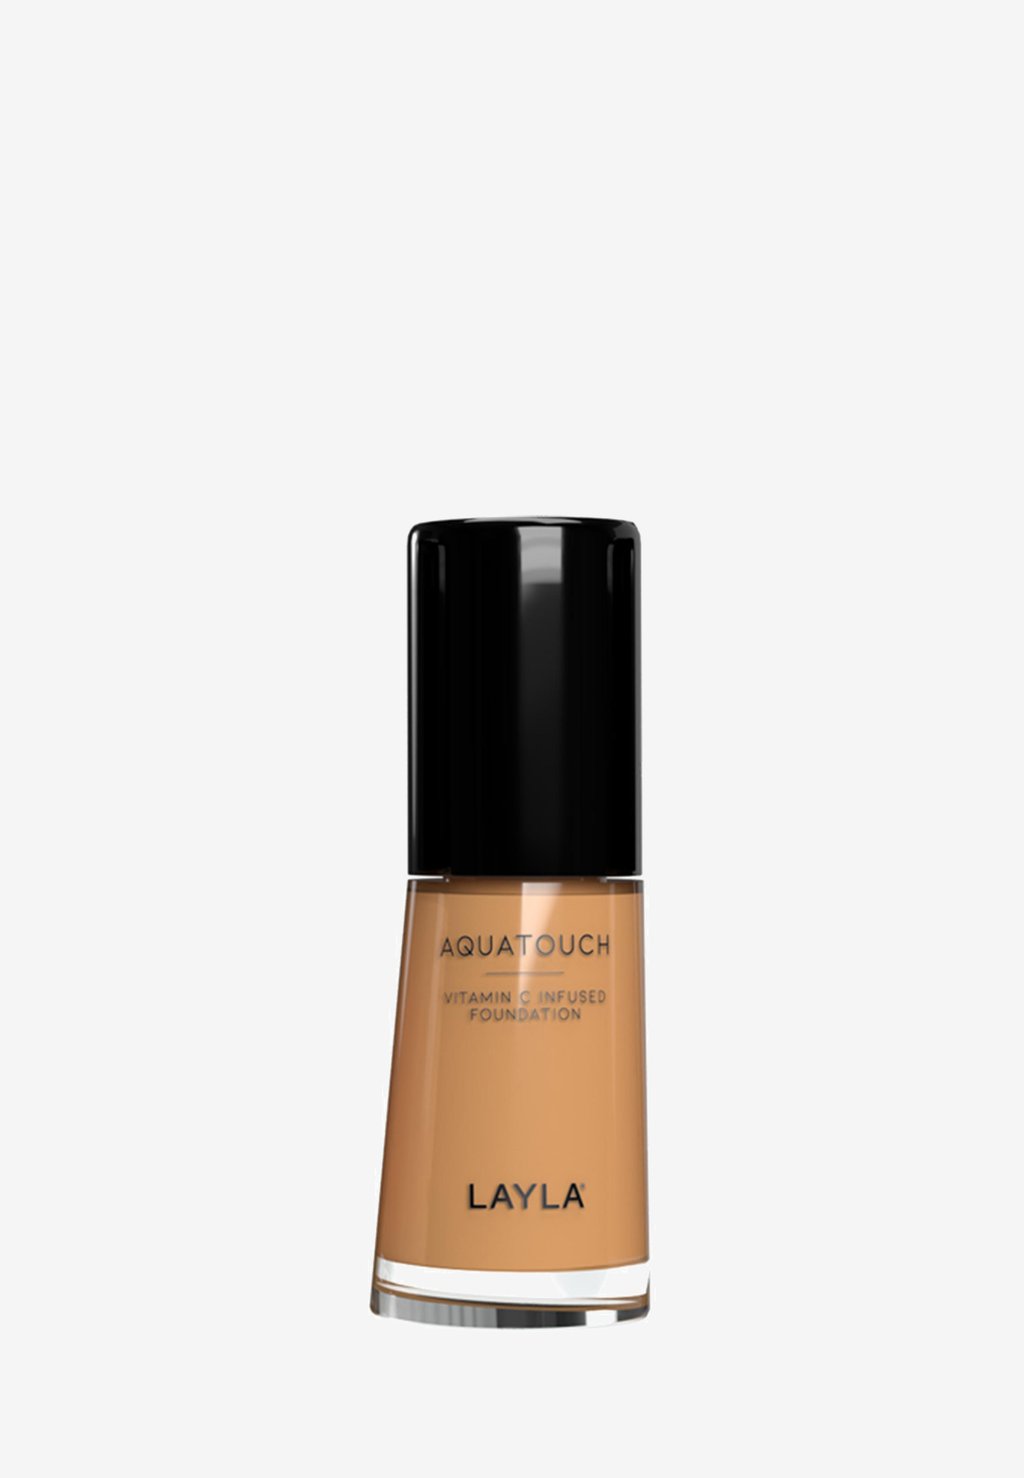 Тональная основа AQUATOUCH FOUNDATION Layla Cosmetics, цвет 5